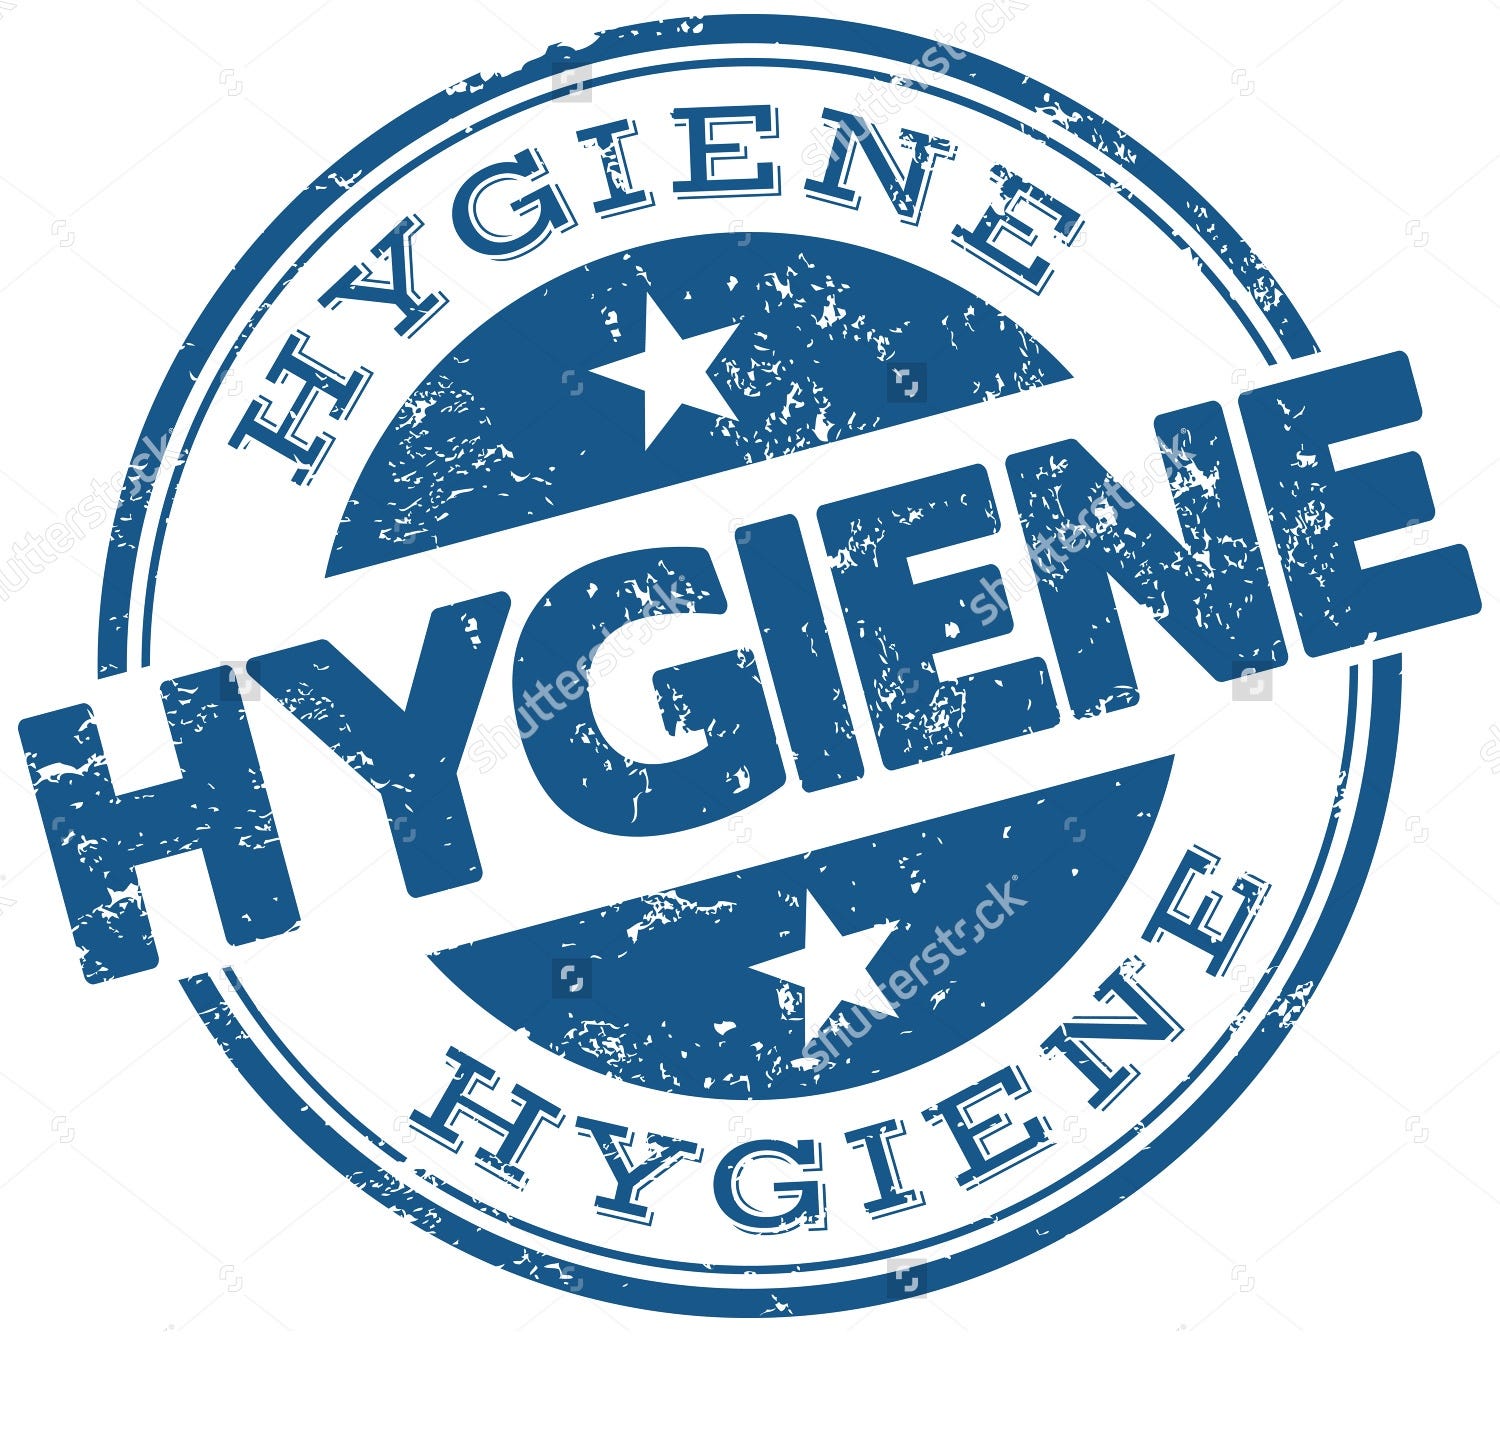 Afbeeldingsresultaat voor hygiene